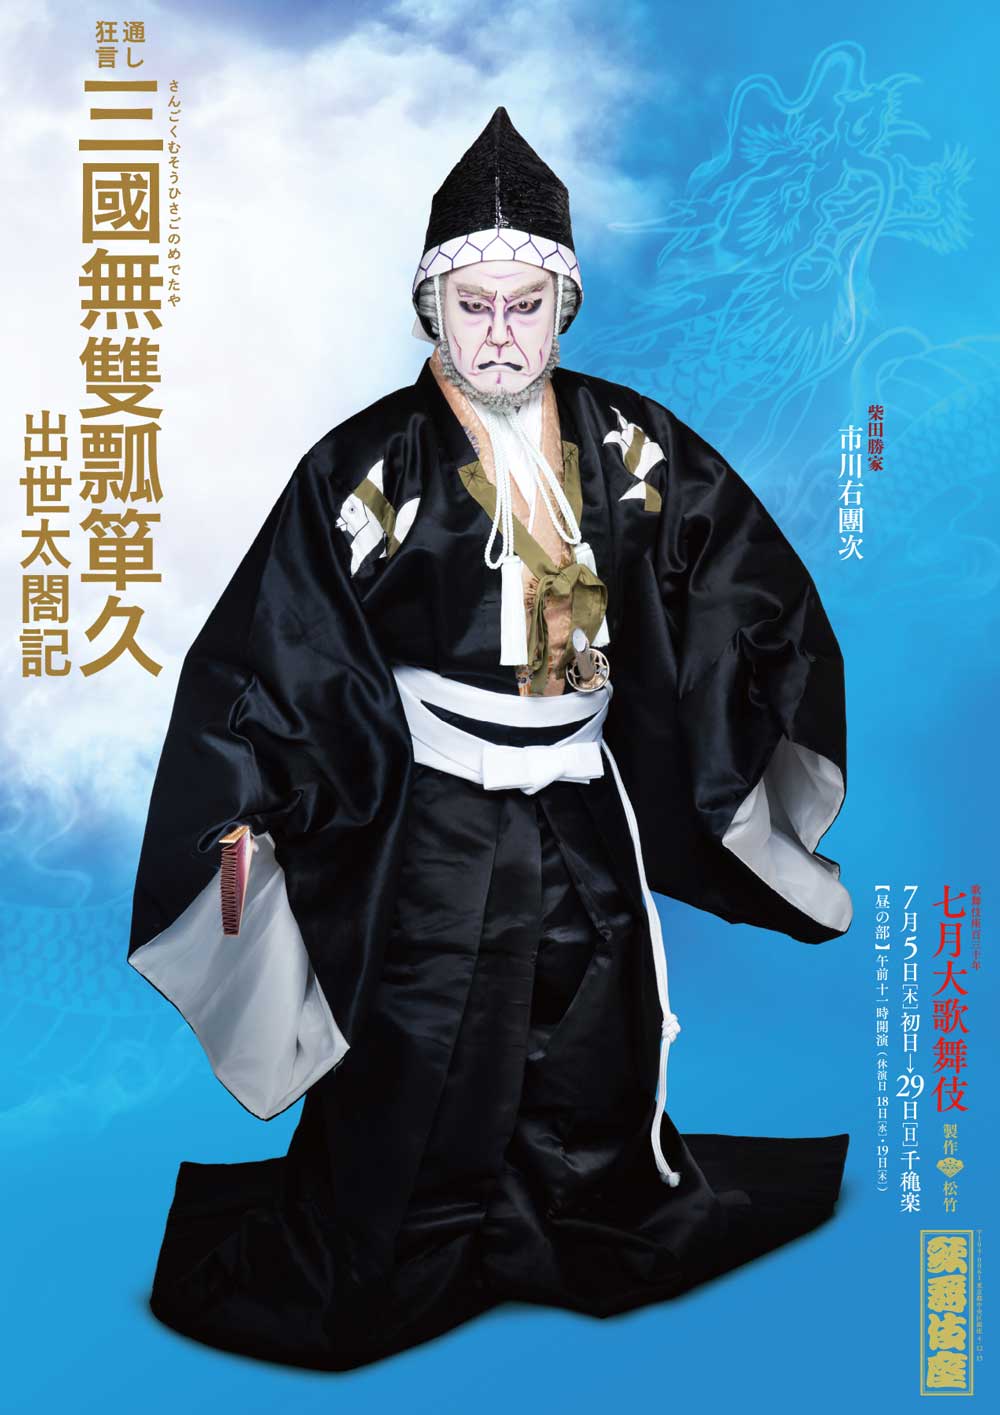 歌舞伎座「七月大歌舞伎」特別ポスター公開